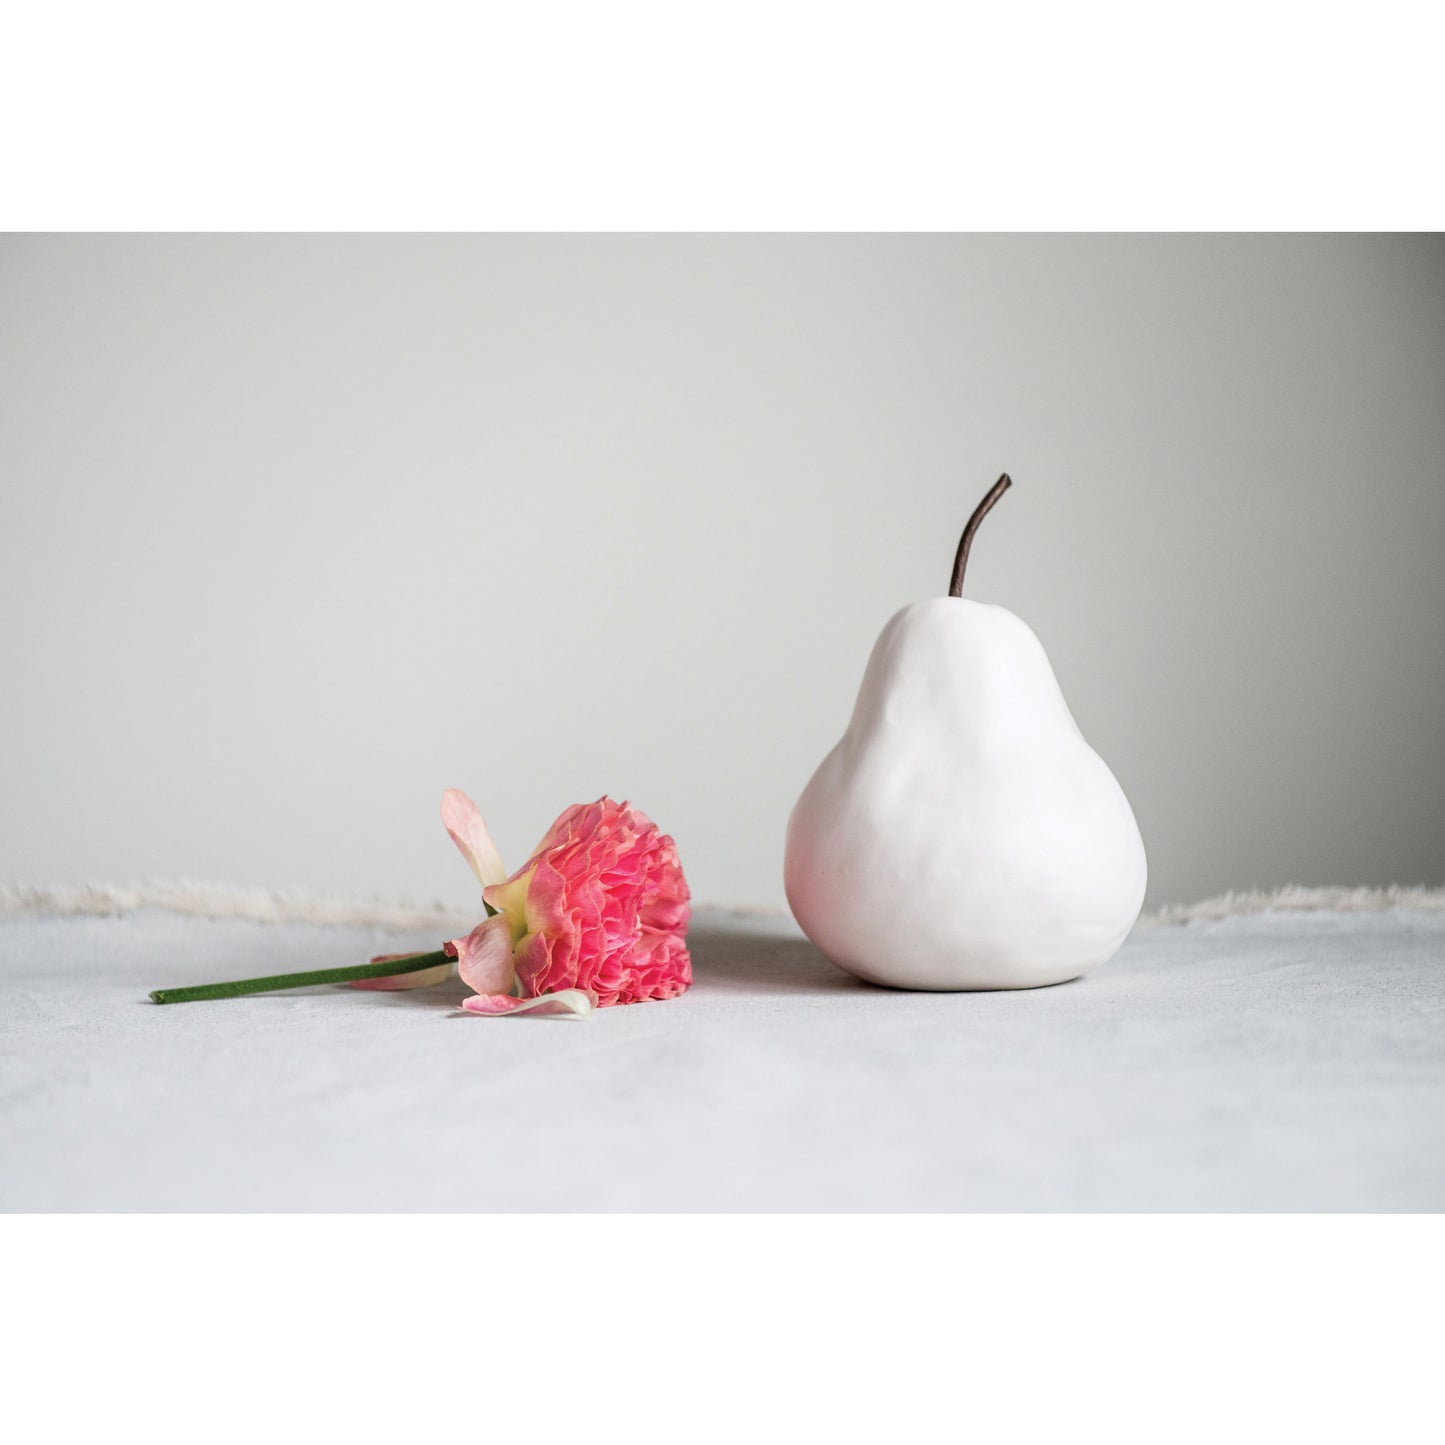 Decorative Stoneware Pear